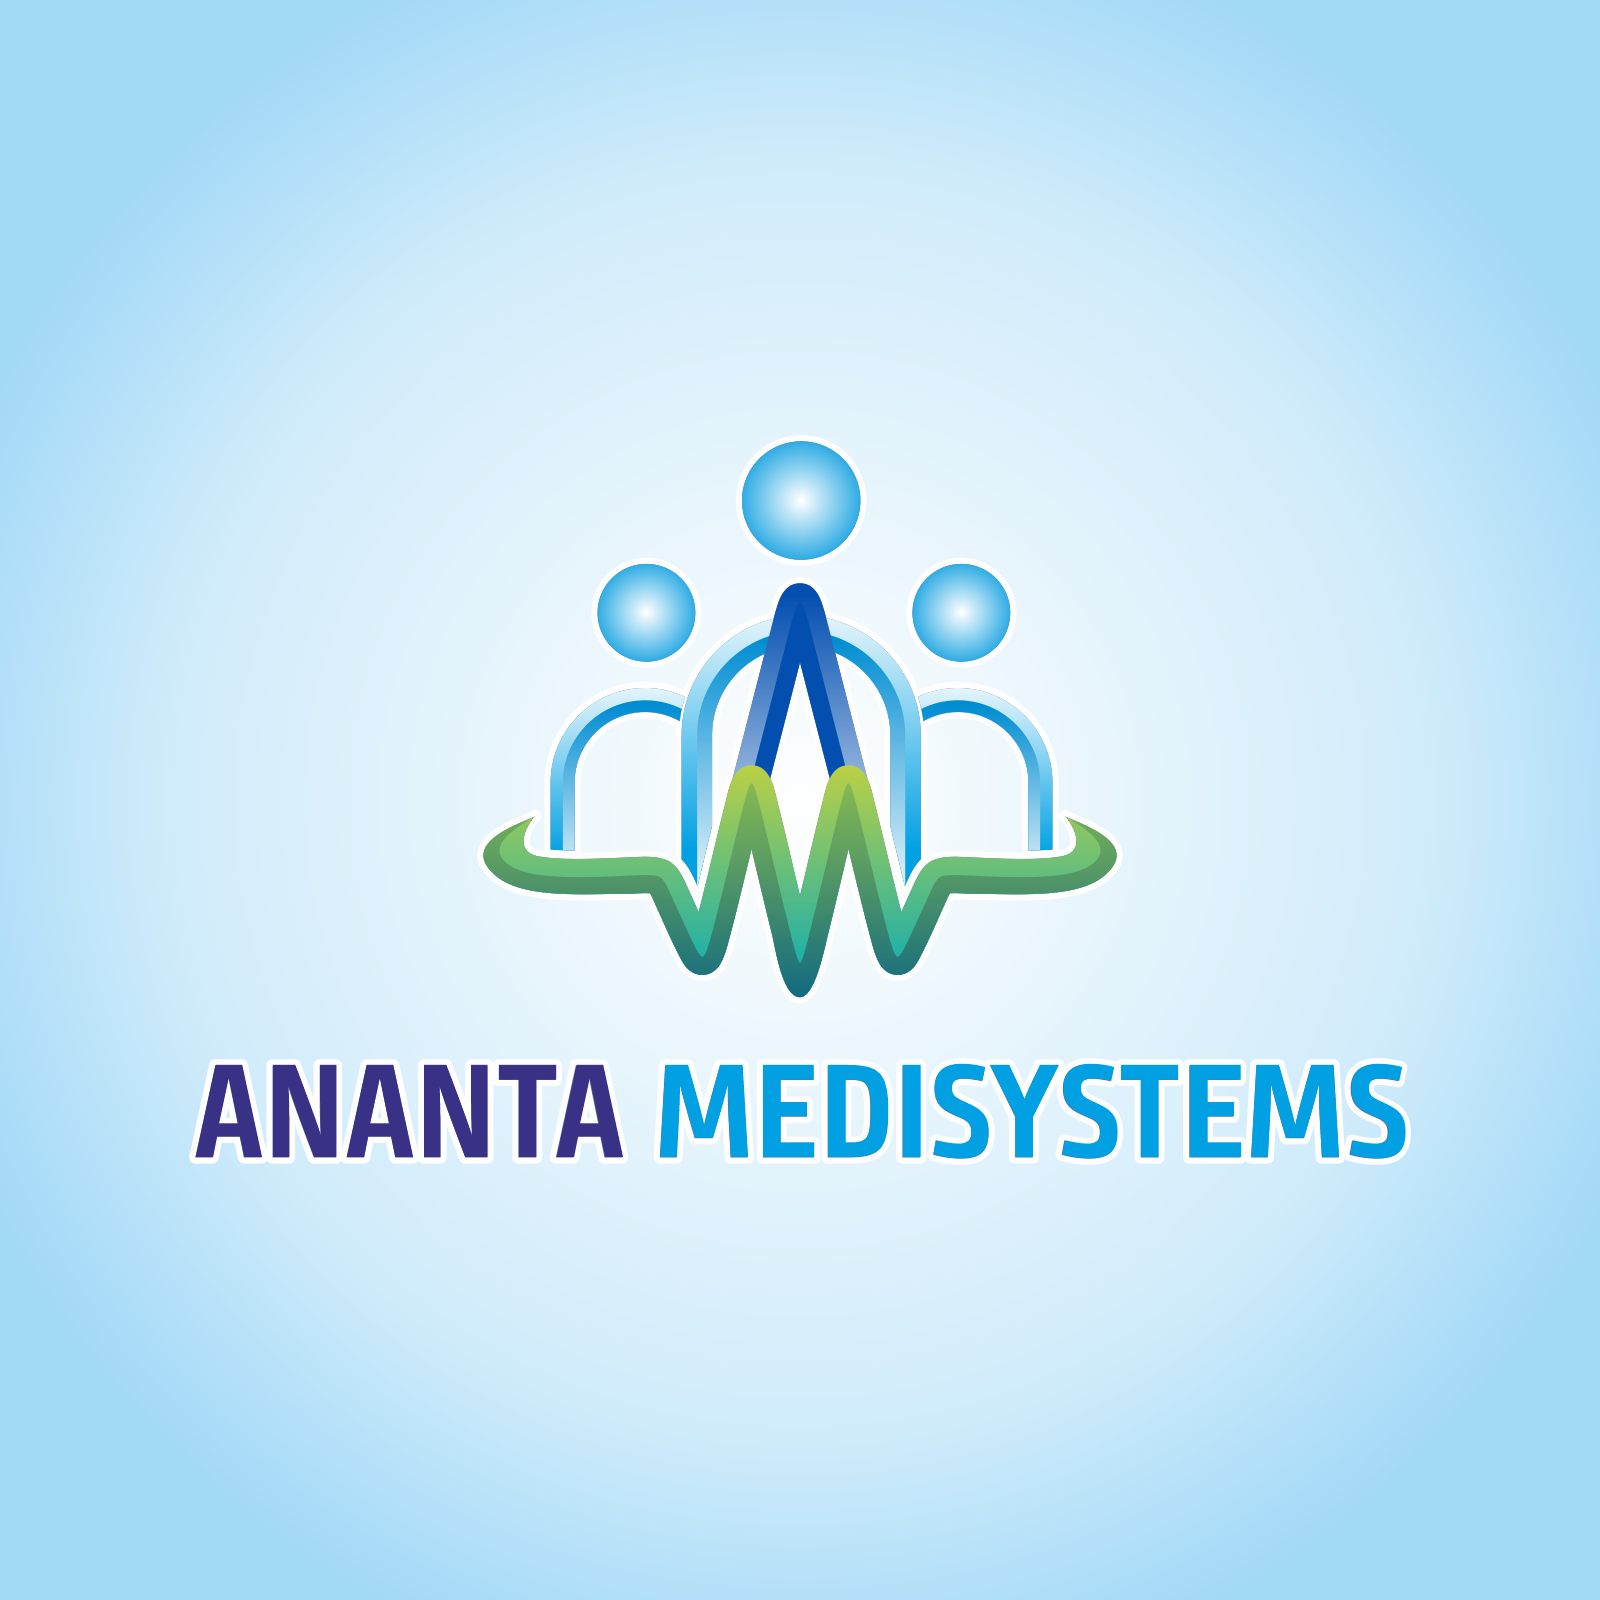 Ananta Medisystems